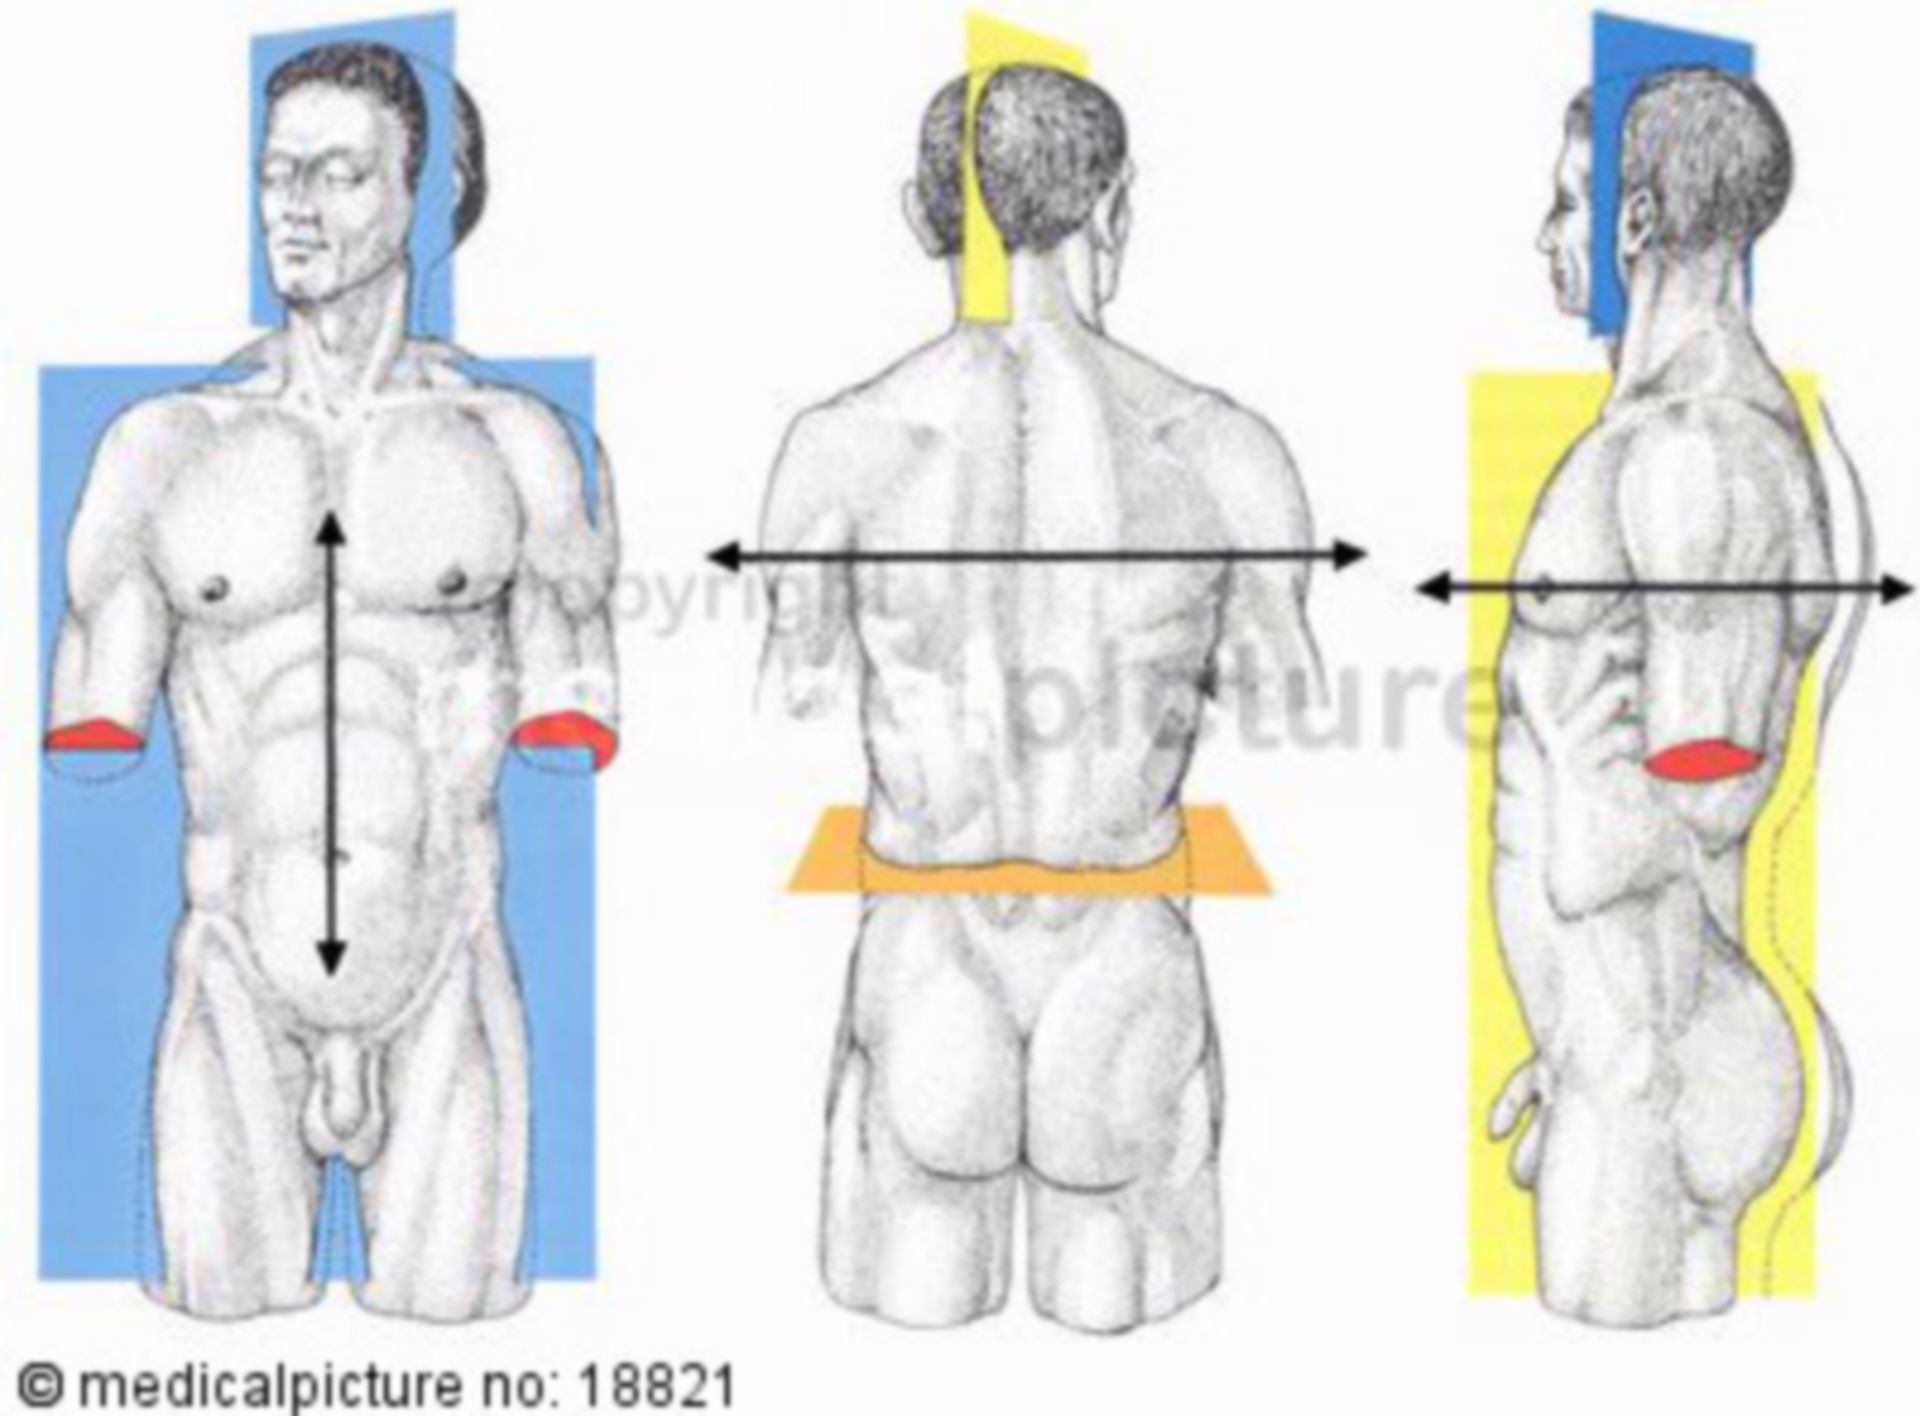 Körperachsen und -ebenen